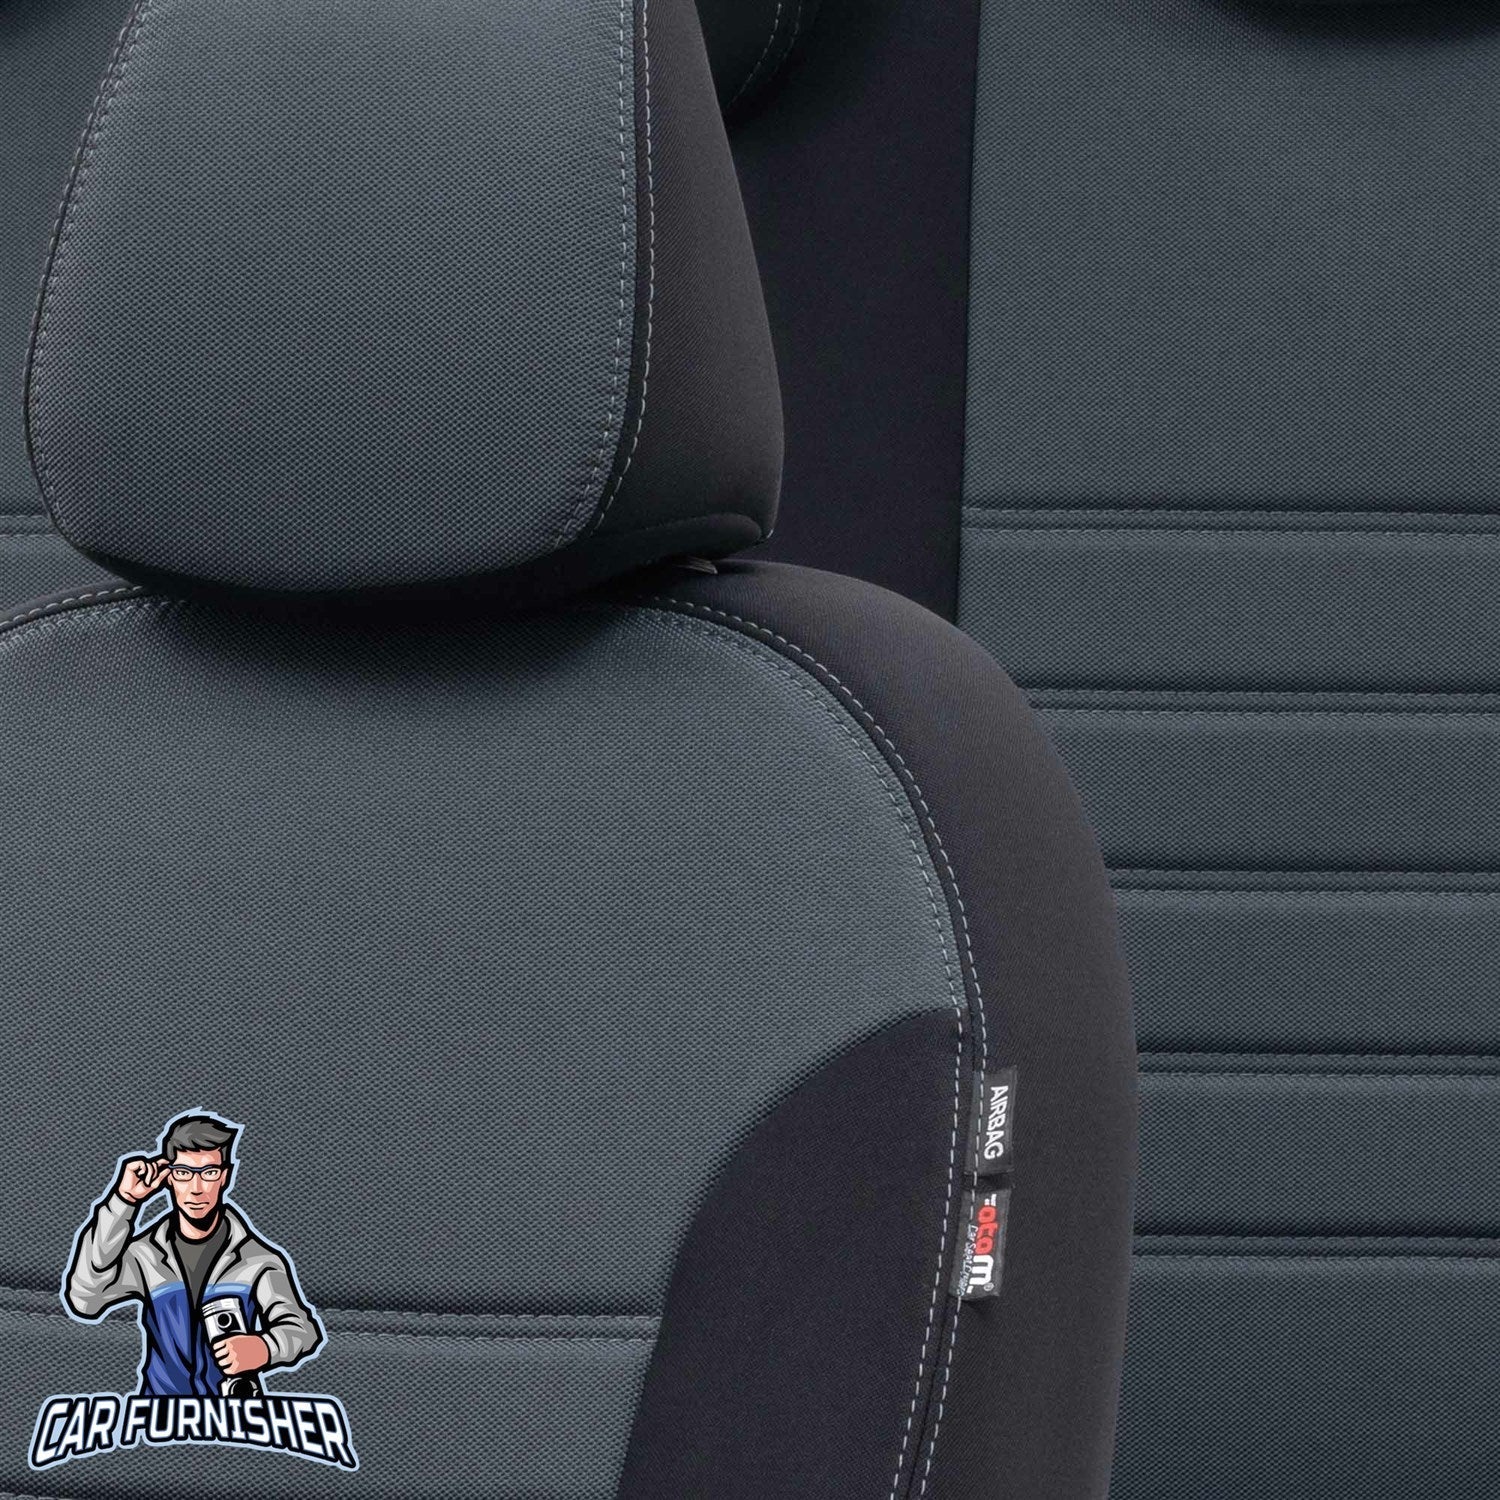 Daihatsu Terios Seat Covers Original Jacquard Design Smoked Black Jacquard Fabric